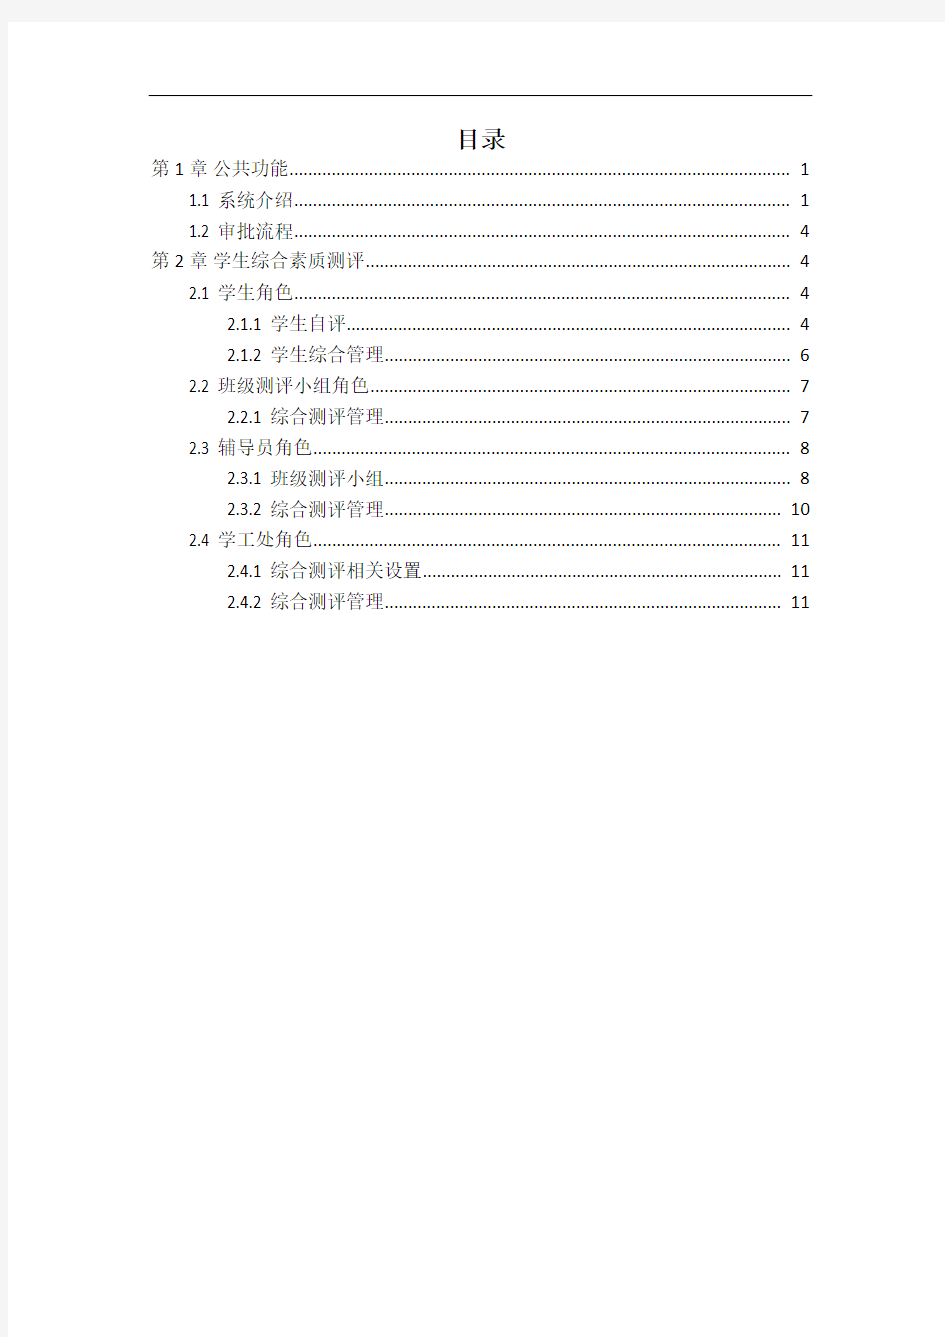 湖南师范大学学生管理系统综合素质测评指南